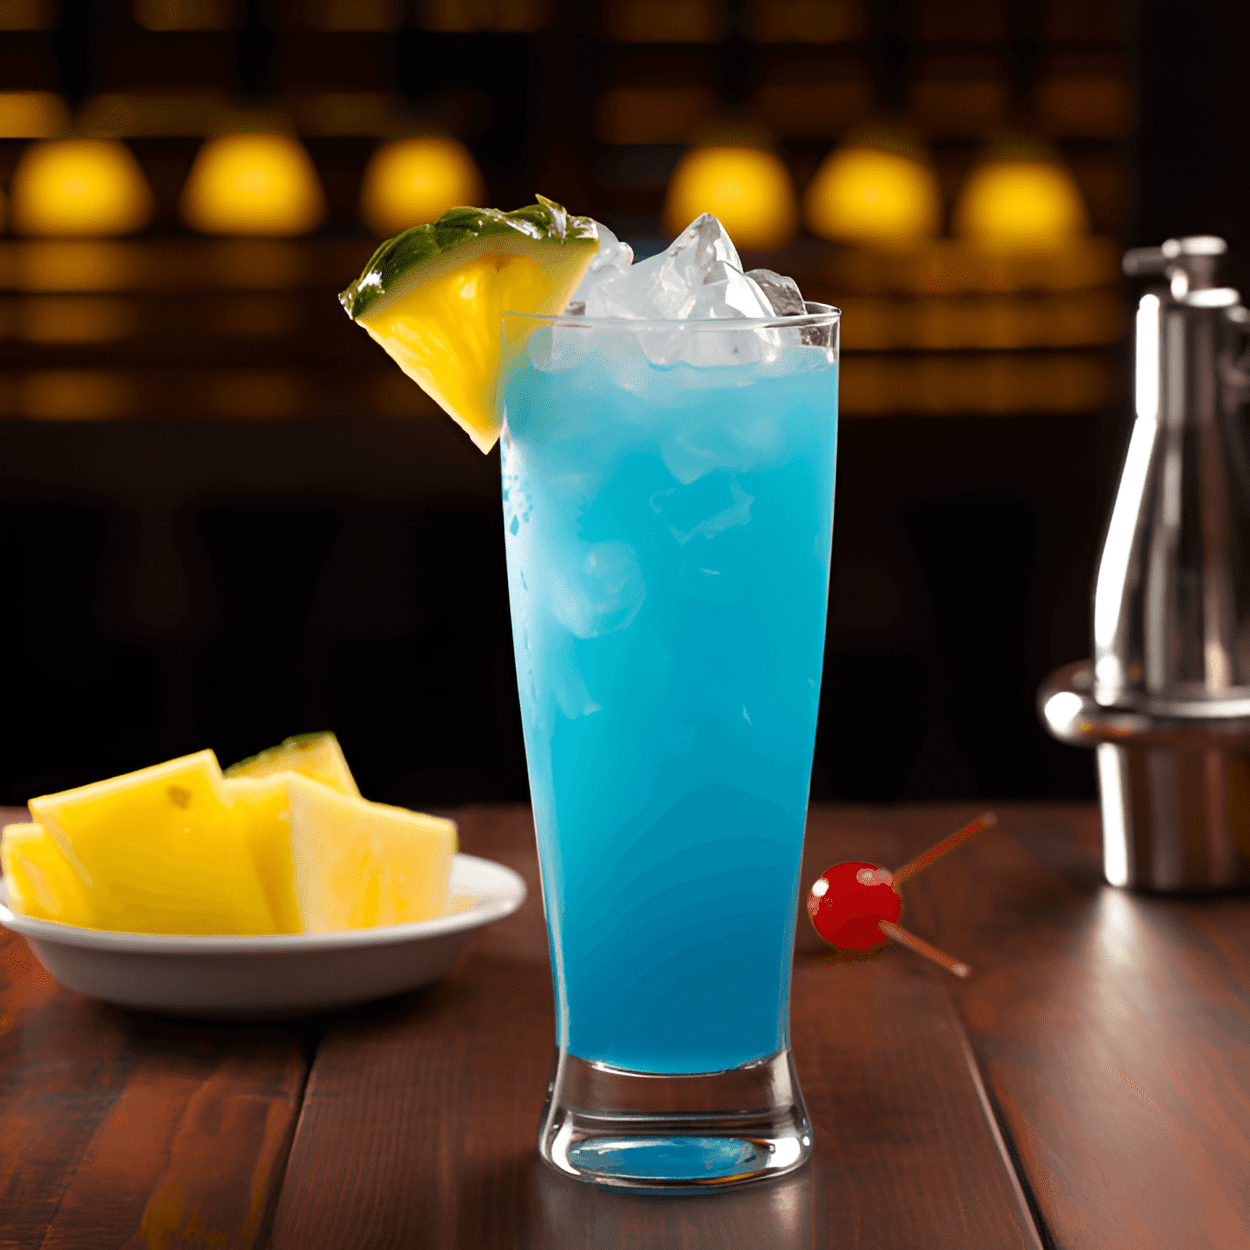 Blue Whale Cóctel Receta - El Blue Whale es un cóctel dulce y afrutado con un toque de acidez. La combinación de curacao azul, vodka y limonada crea un sabor refrescante y cítrico que se equilibra con la dulzura del jugo de piña. Es una bebida fuerte, pero el alcohol está bien disimulado por los otros sabores.